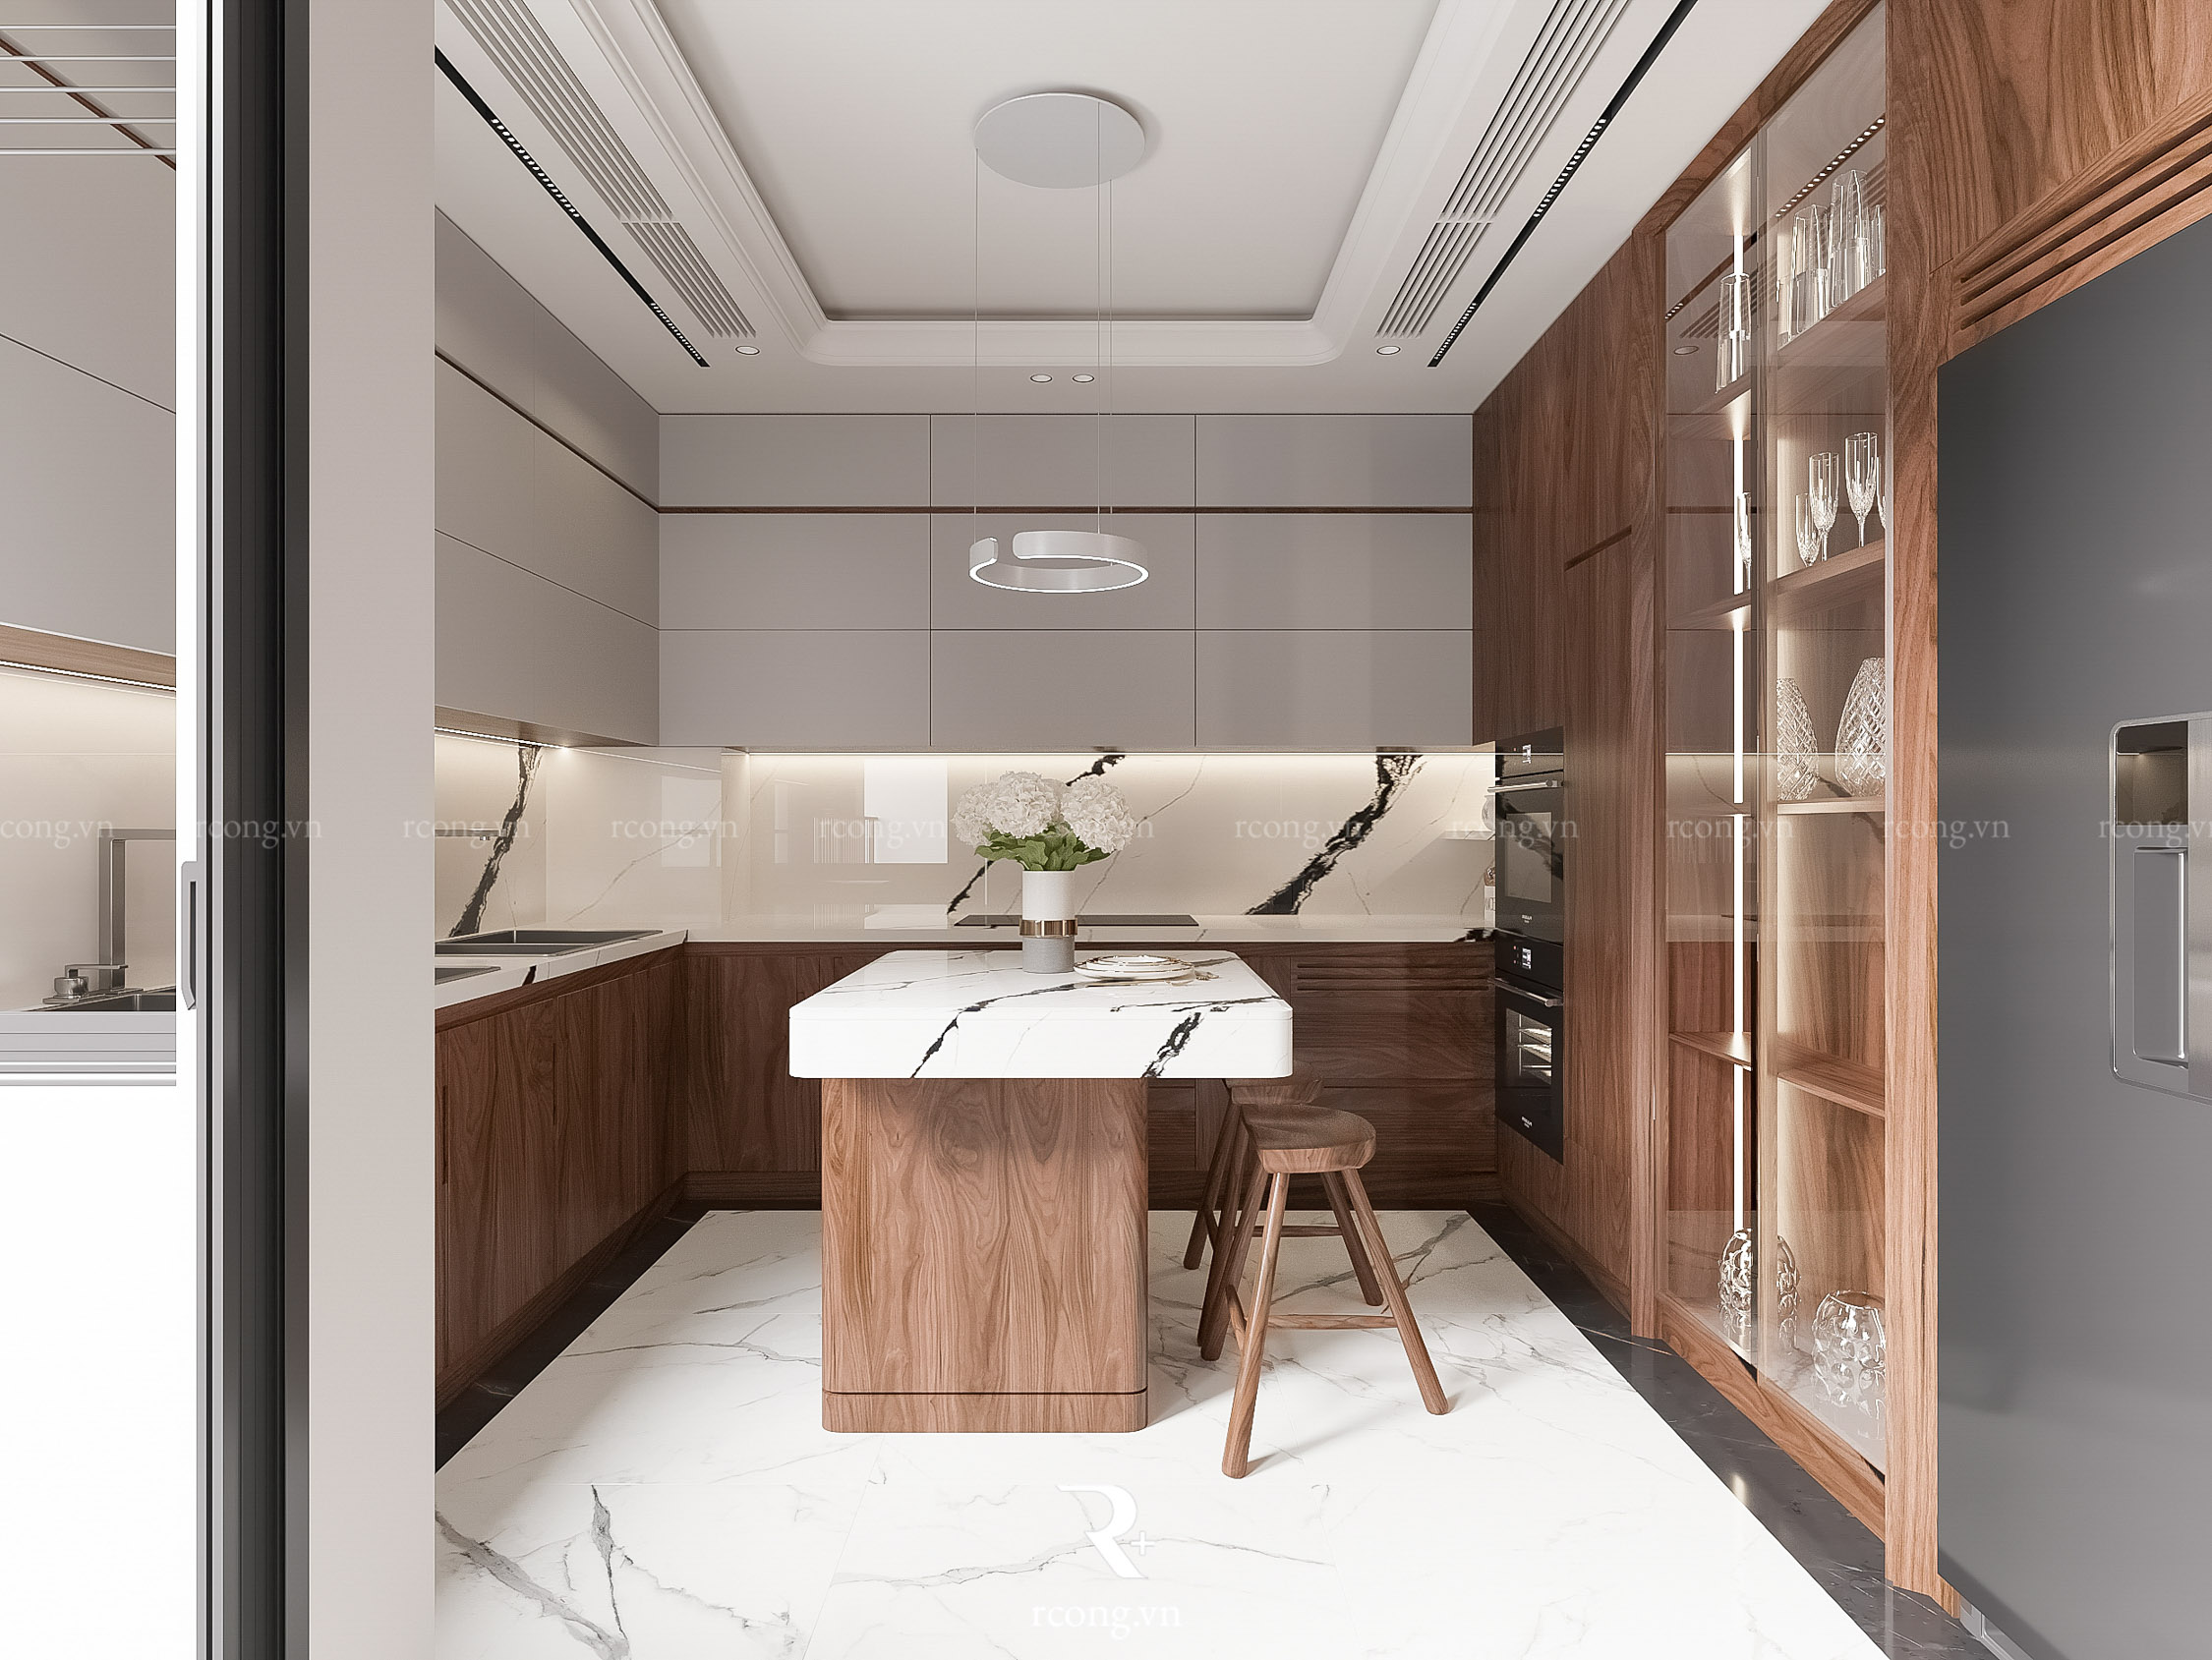 thiết kế nội thất chung cư BGR Lê Văn Lương - Mr Quang - Phòng khách bếp (12)